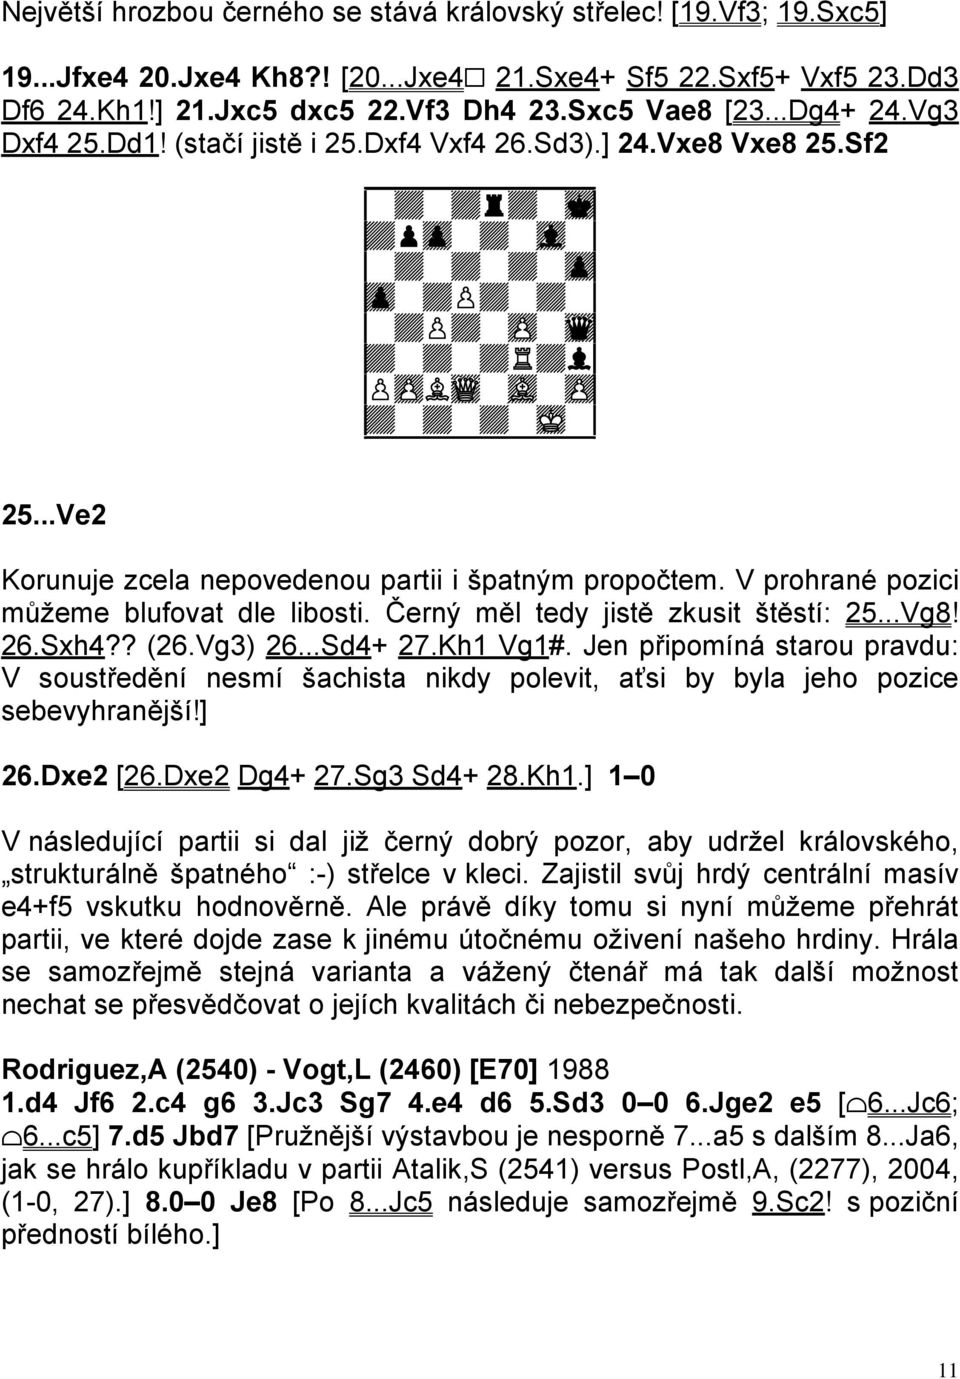 ..Ve2 Korunuje zcela nepovedenou partii i špatným propočtem. V prohrané pozici můžeme blufovat dle libosti. Černý měl tedy jistě zkusit štěstí: 25...Vg8! 26.Sxh4?? (26.Vg3) 26...Sd4+ 27.Kh1 Vg1#.